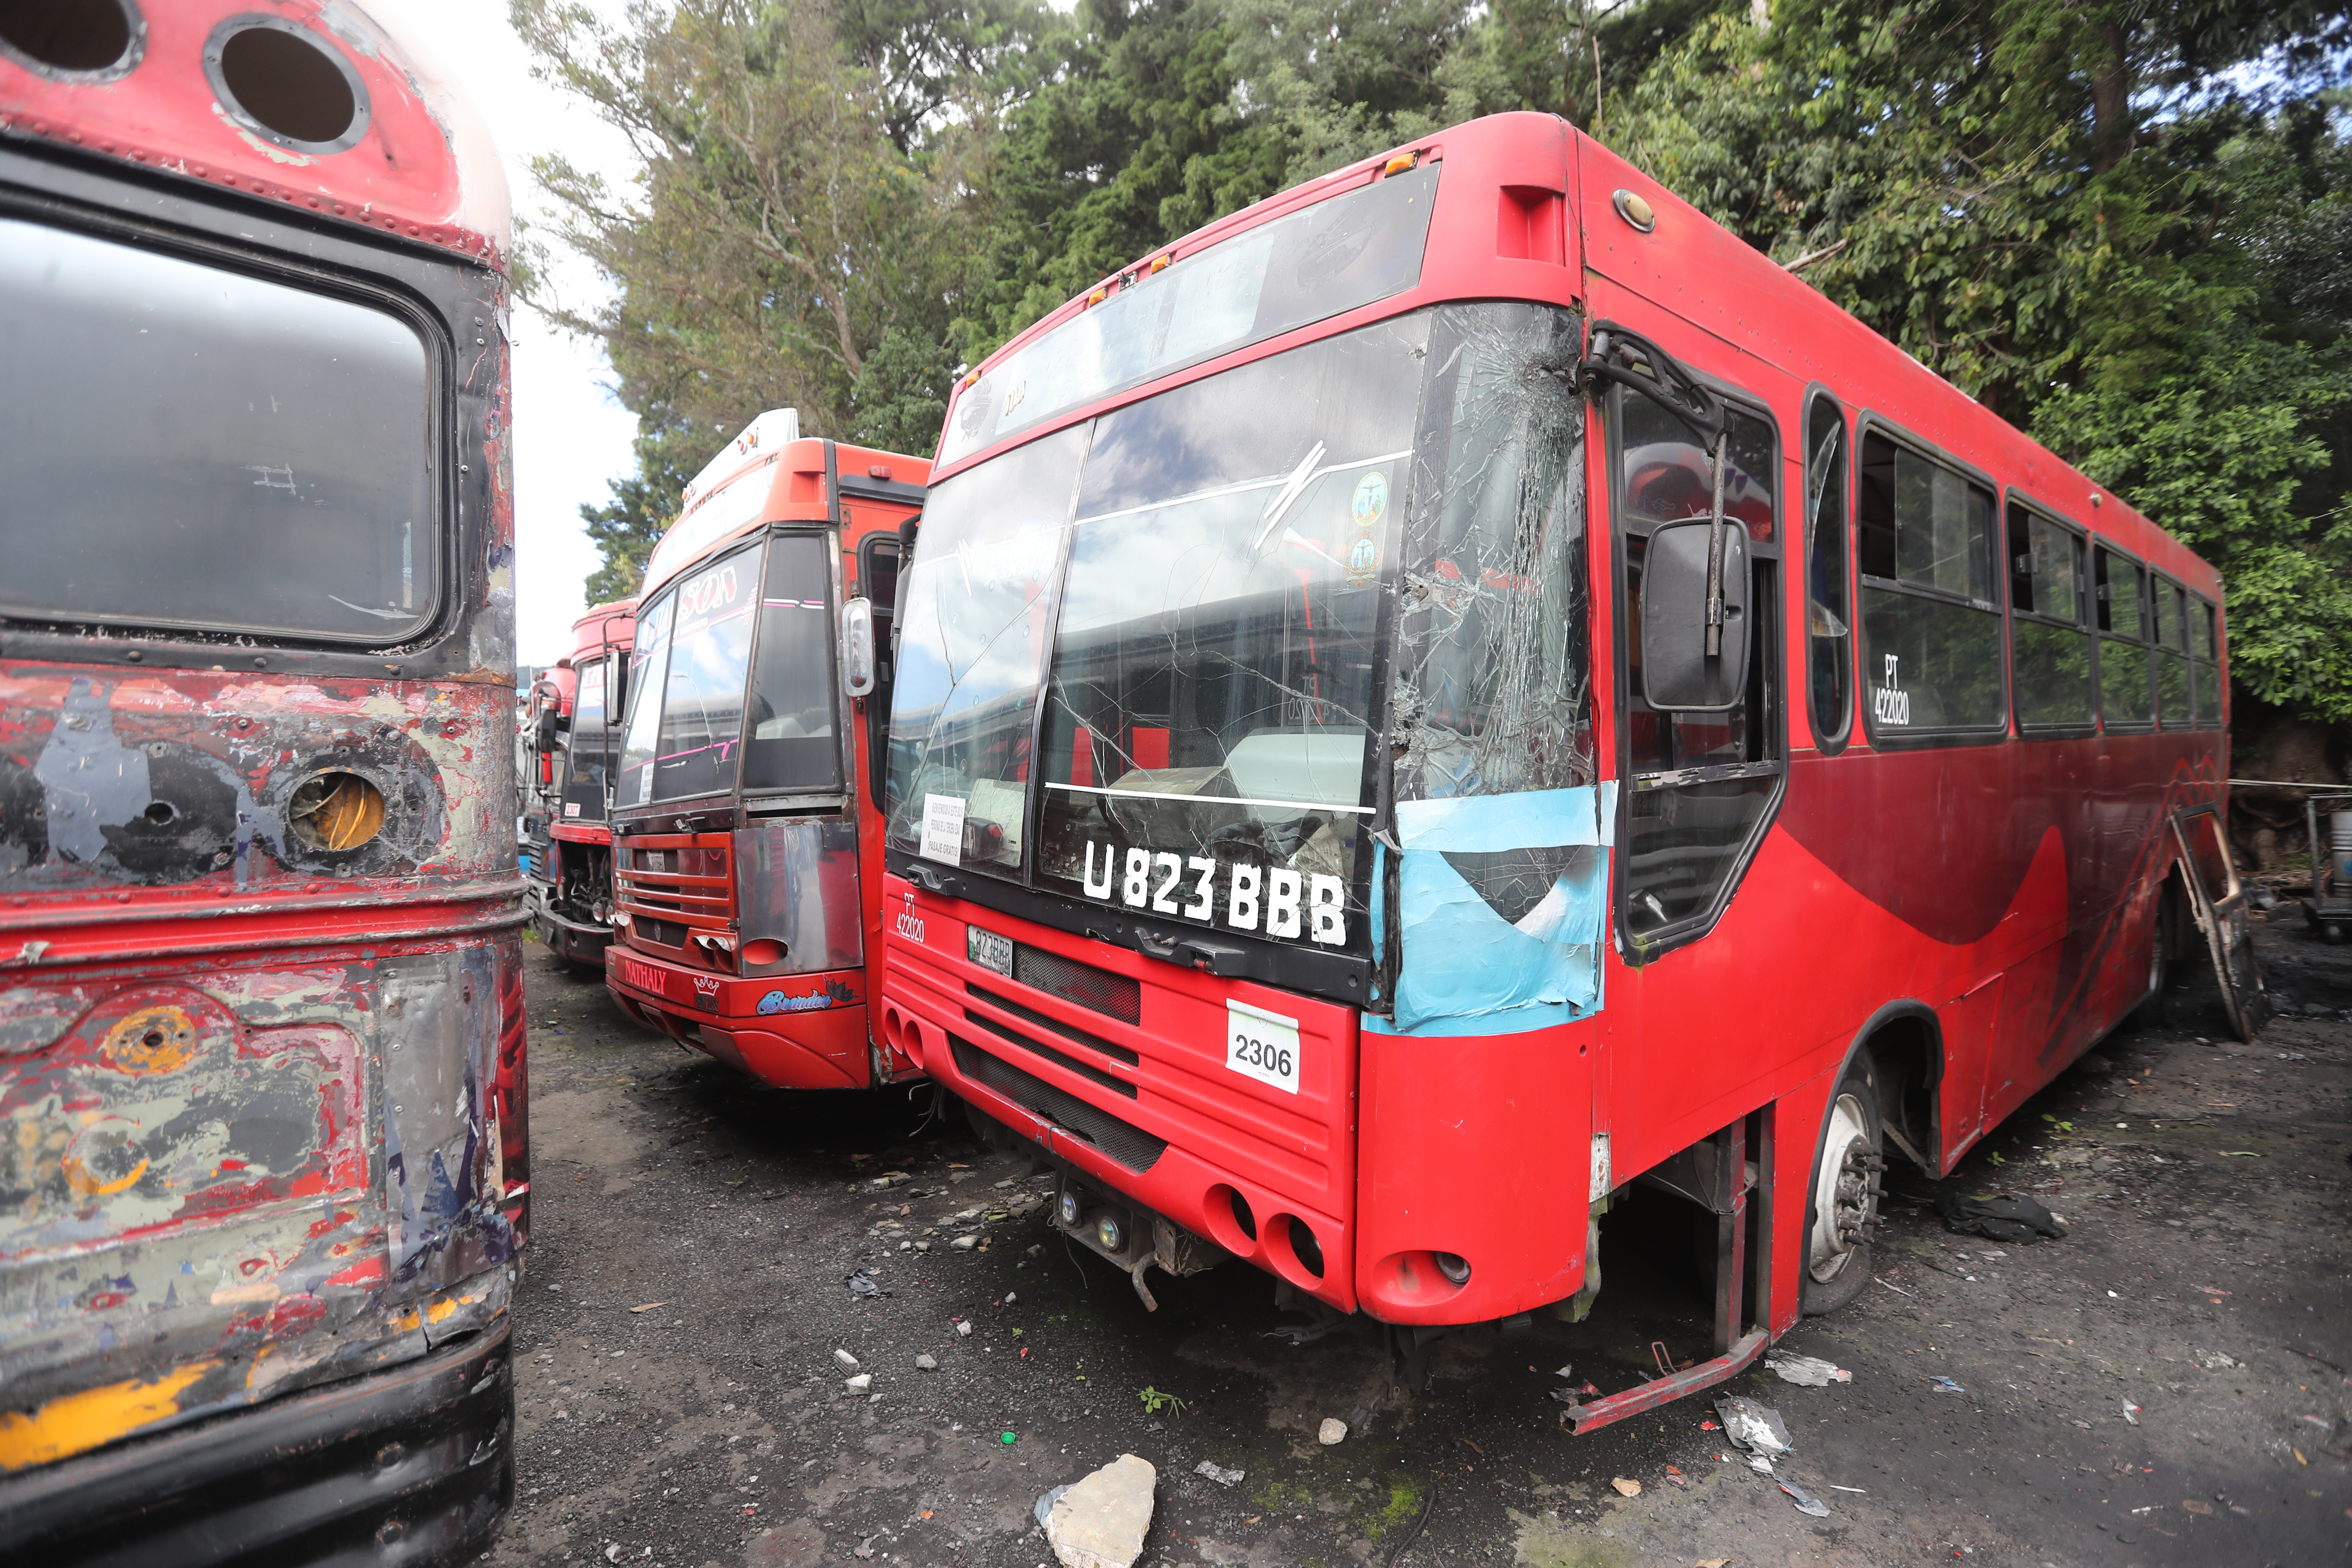 Los buses quedaron fuera de circulación en marzo de 2020 durante la pandemia del Covid-19. (Foto Prensa Libre: Erick Ávila)